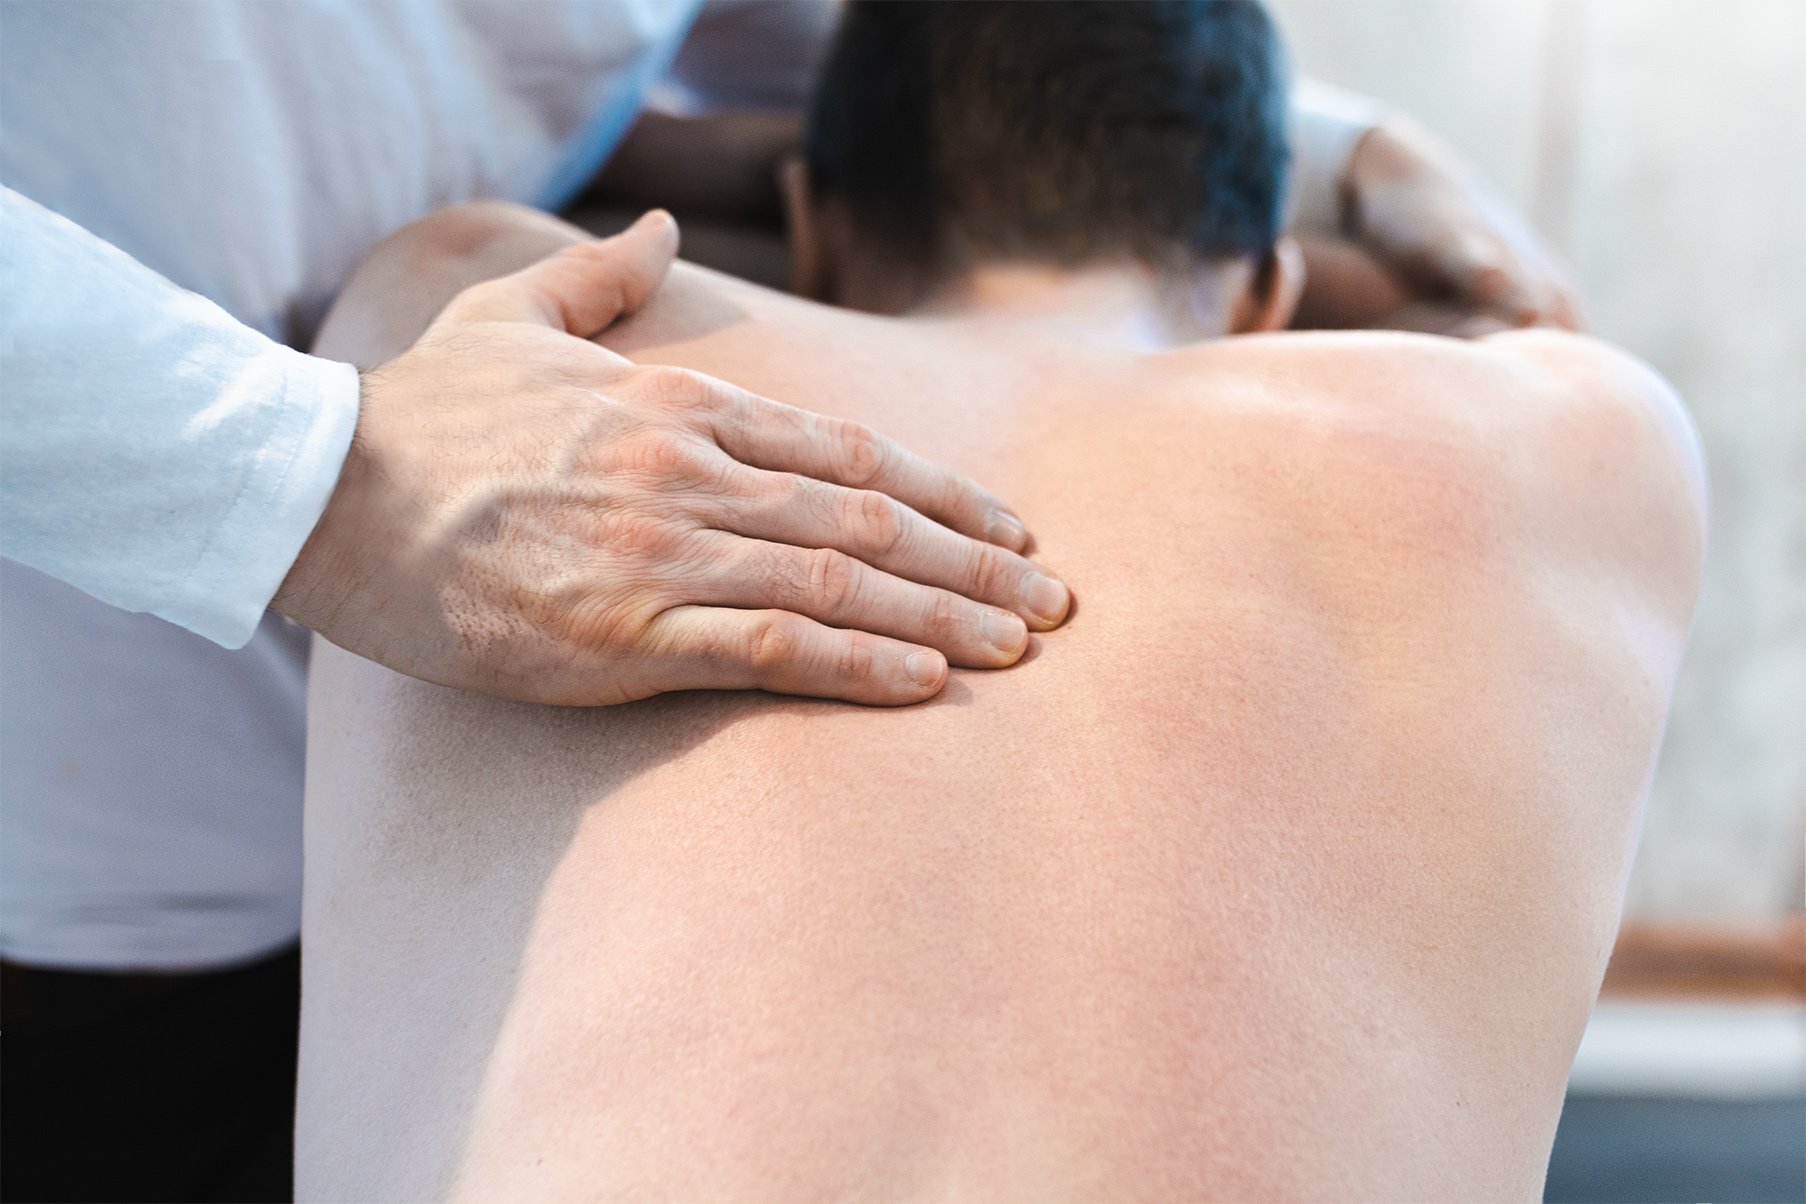 Osteopath Gunanr Sinnig behandelt mit seinen Händen den oberen Rückenbereich seines Patienten